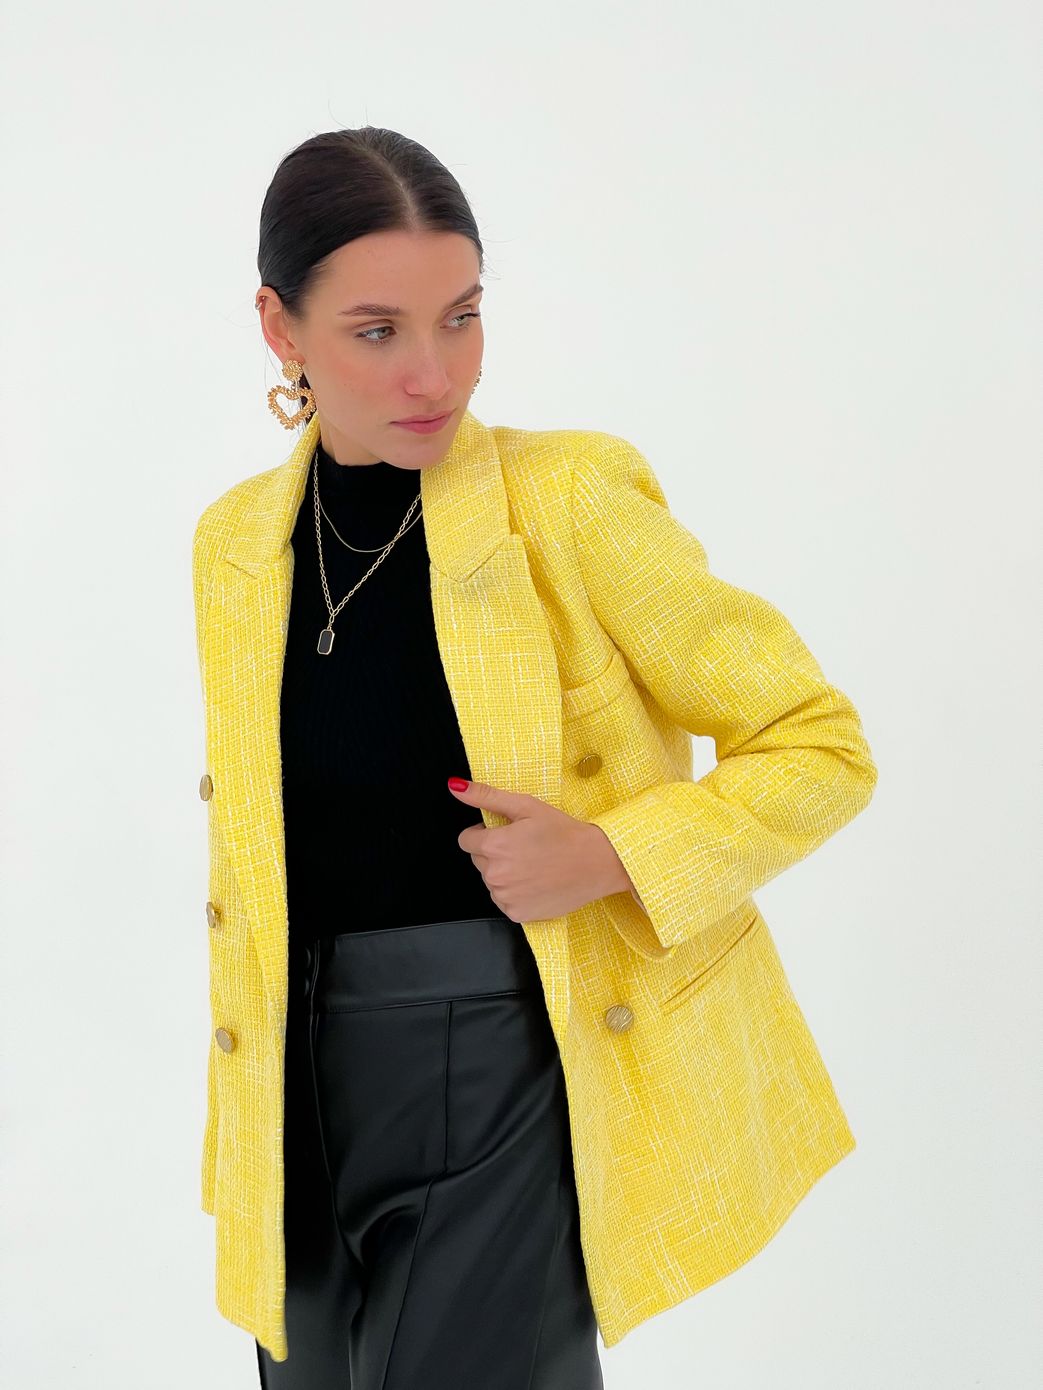 Стильный твидовый пиджак желтый, Жёлтый, S